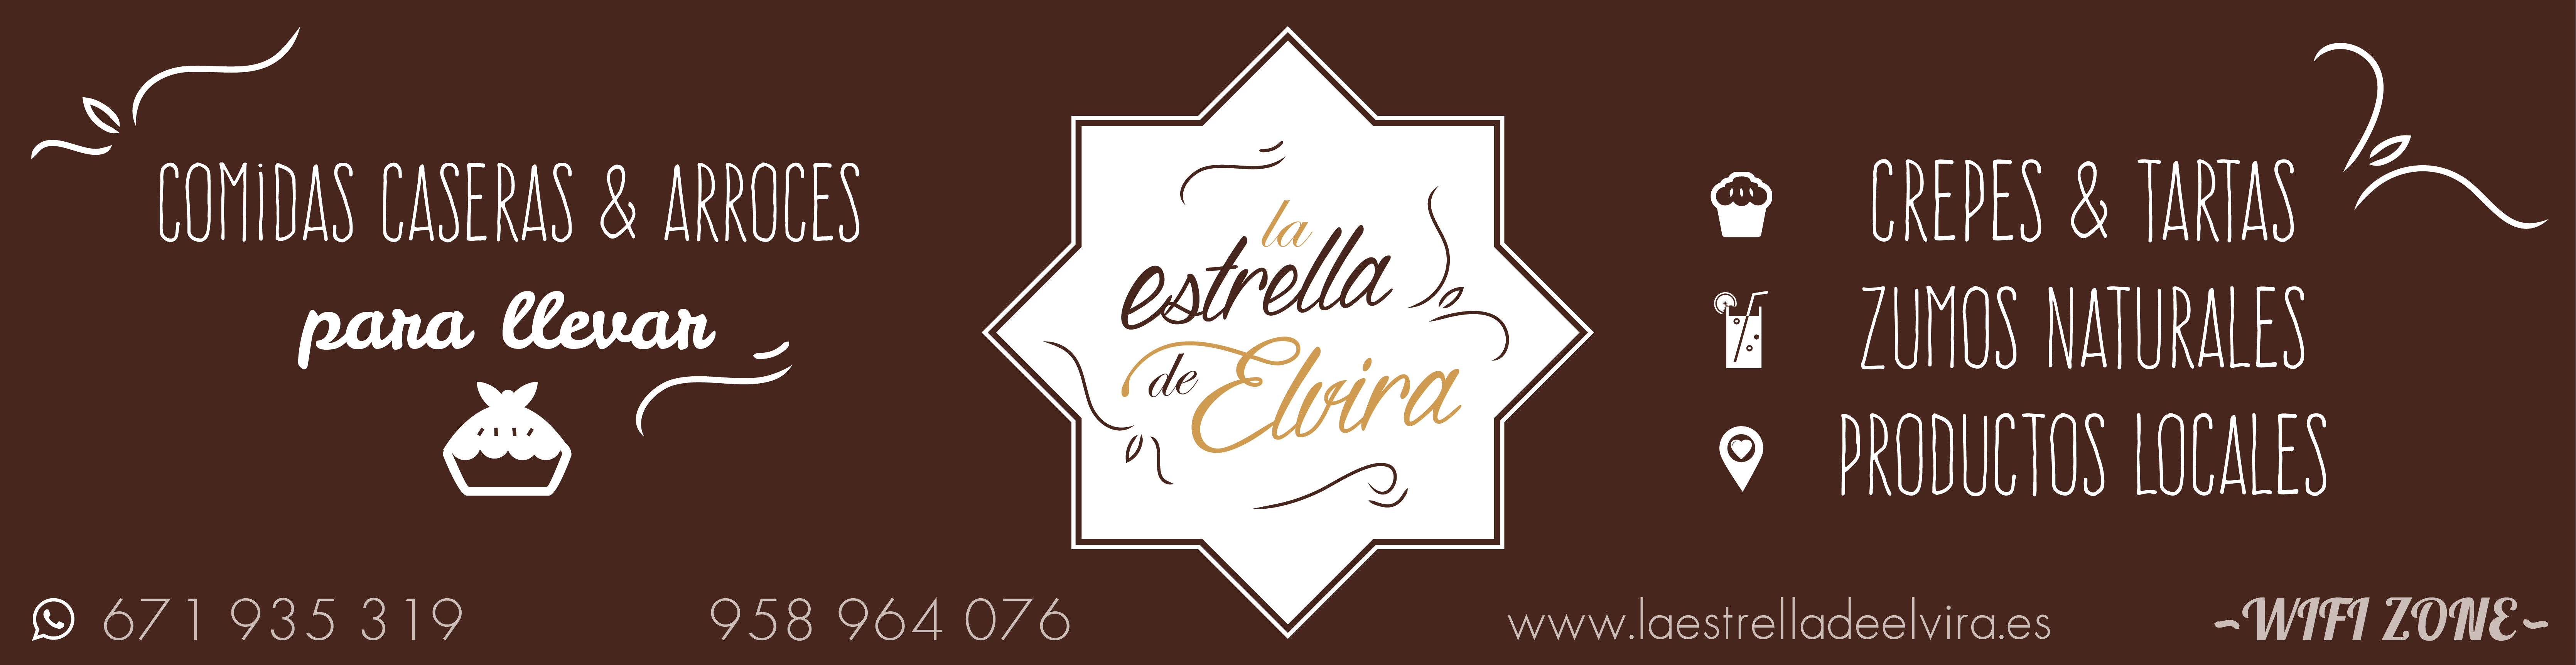 Diseño gráfico de cartel para la estrella de Elvira, negocio de alimentación en Granada